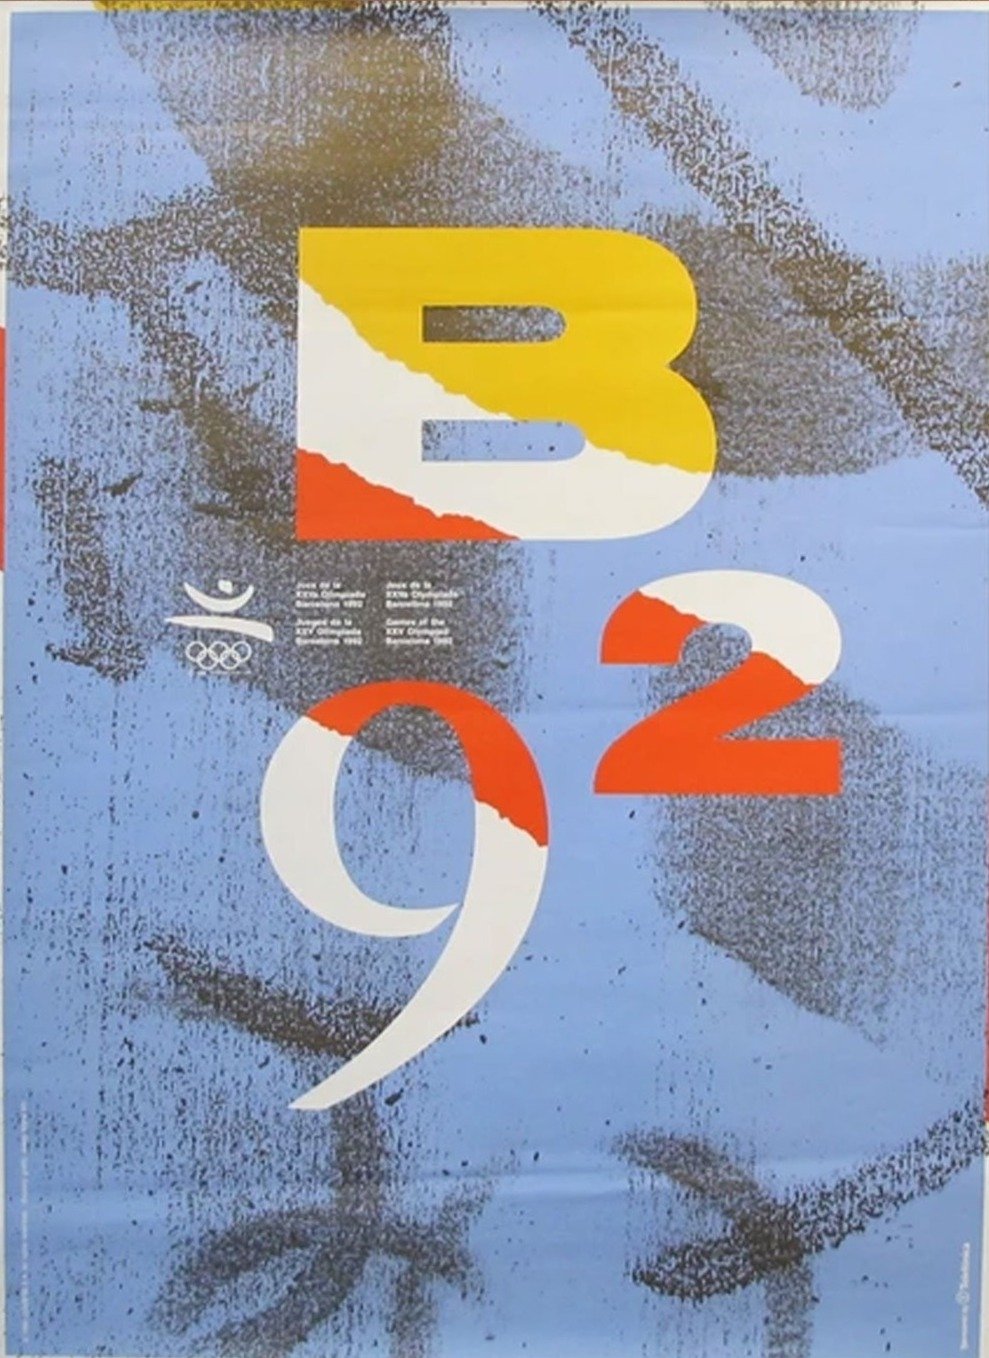 Barcelona 1992 Olympics - Printed Originals